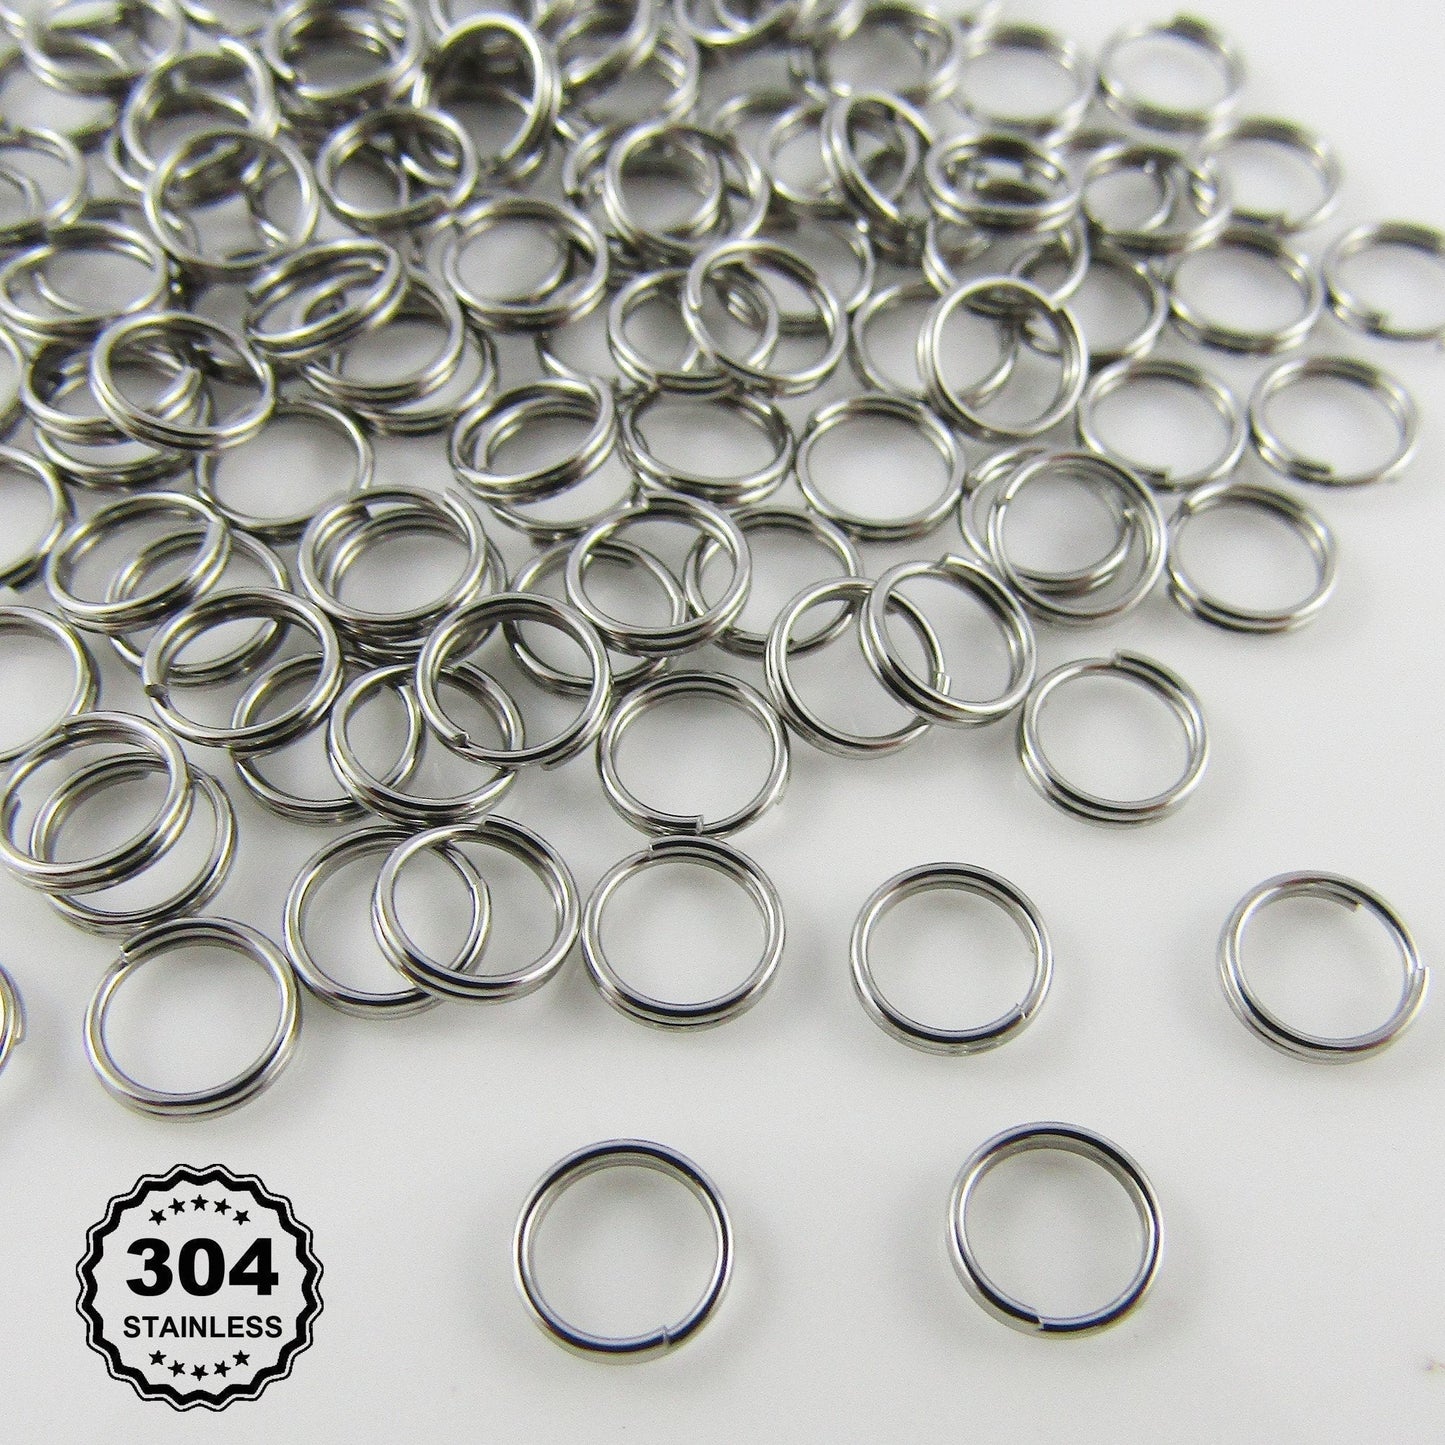 Bulk 460pcs Stainless Steel 5mm x 0.3mm Split Rings Findings Craft